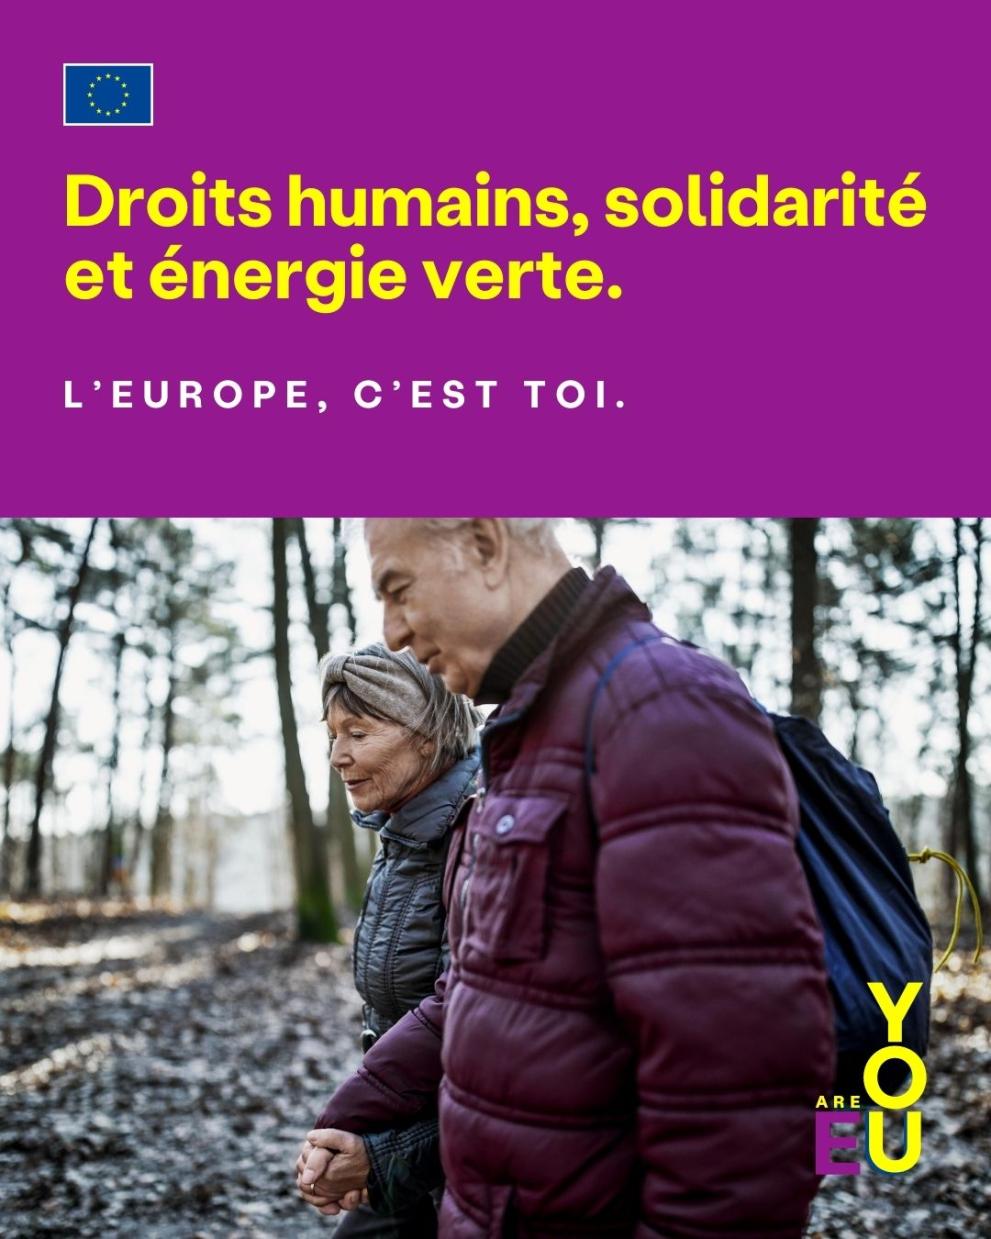 Droits humains, solidarité et énergie verte.